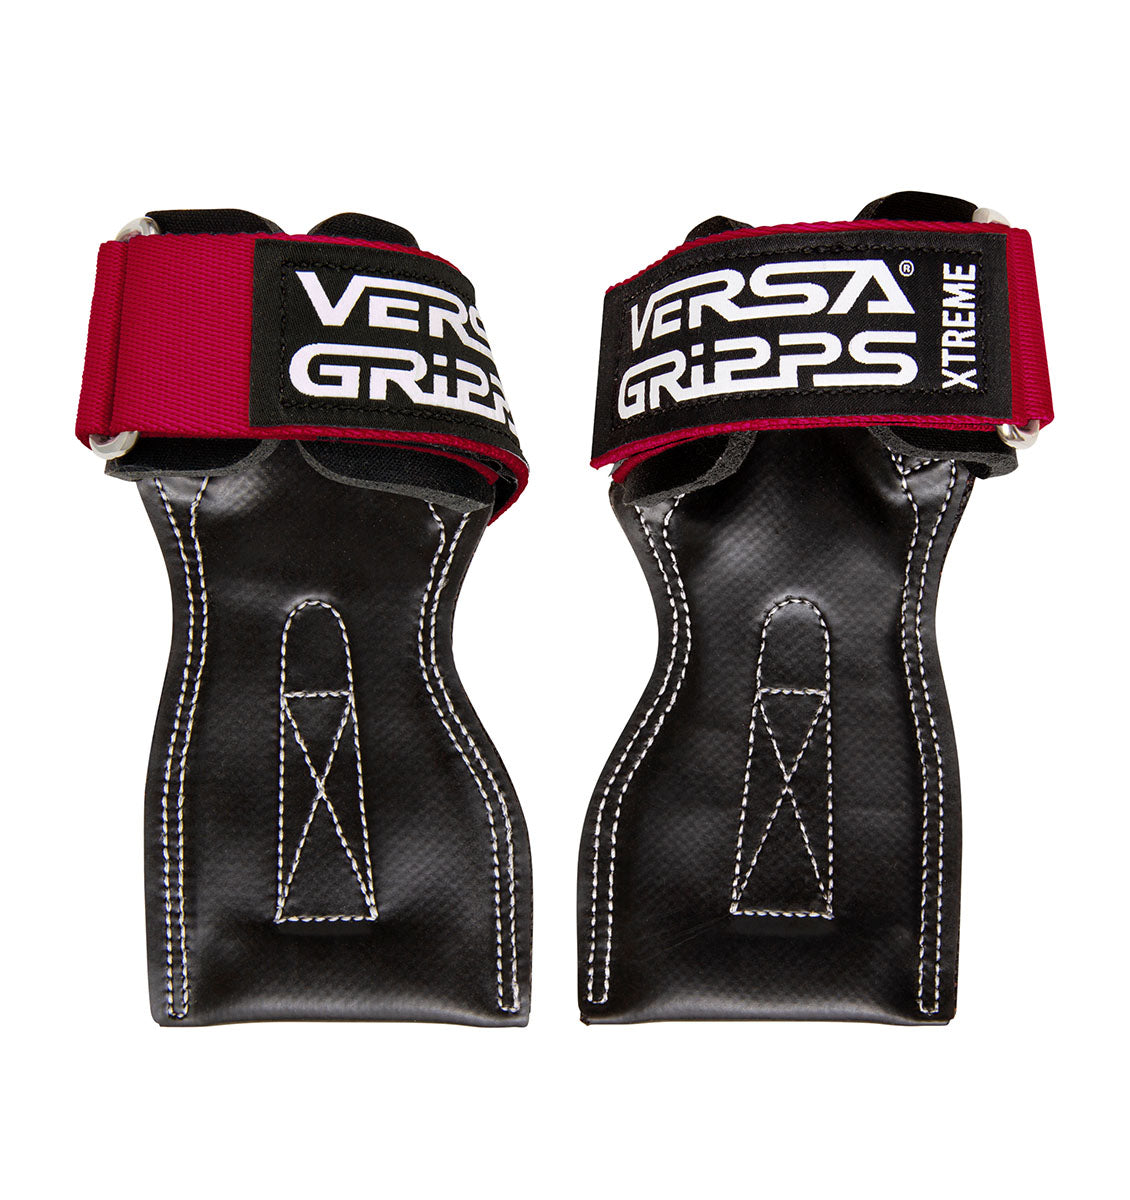 Versa Gripps® Xtreme Series - Sceptre Red - 1